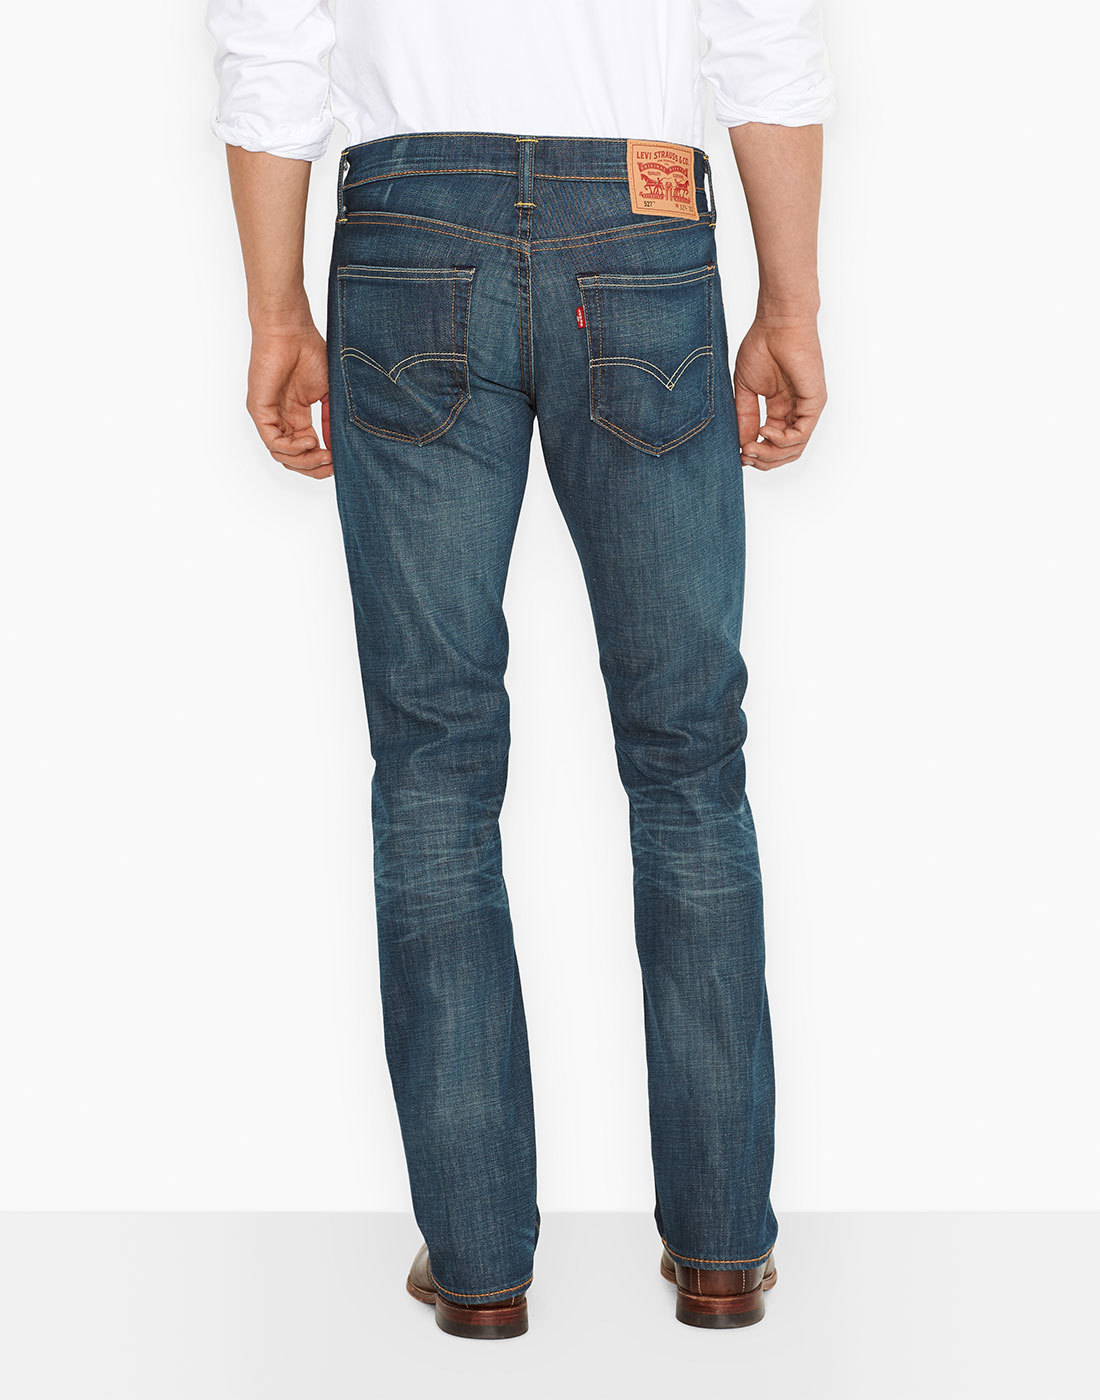 LEVI'S® 527 Retro Mens Slim Boot Cut Denim Jeans in Explorer Blue